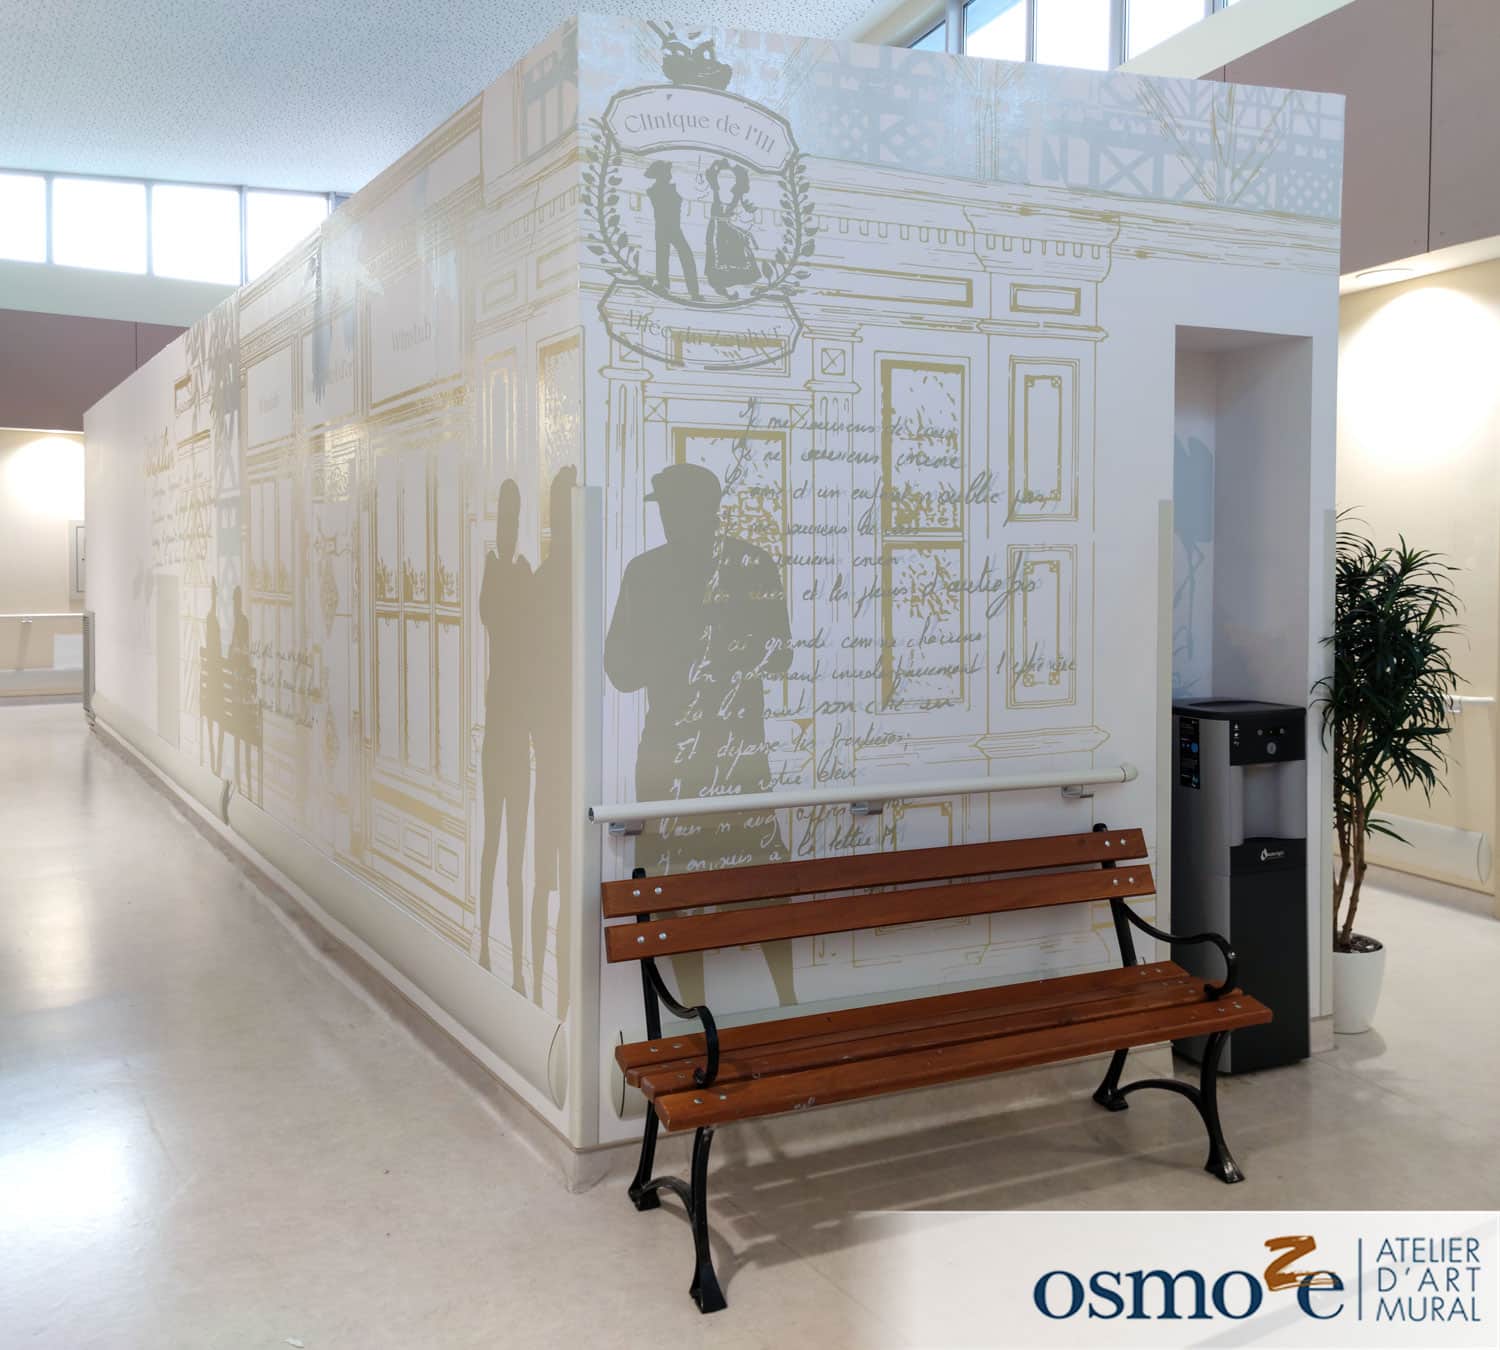 décoration murale osmoze et projet clinea